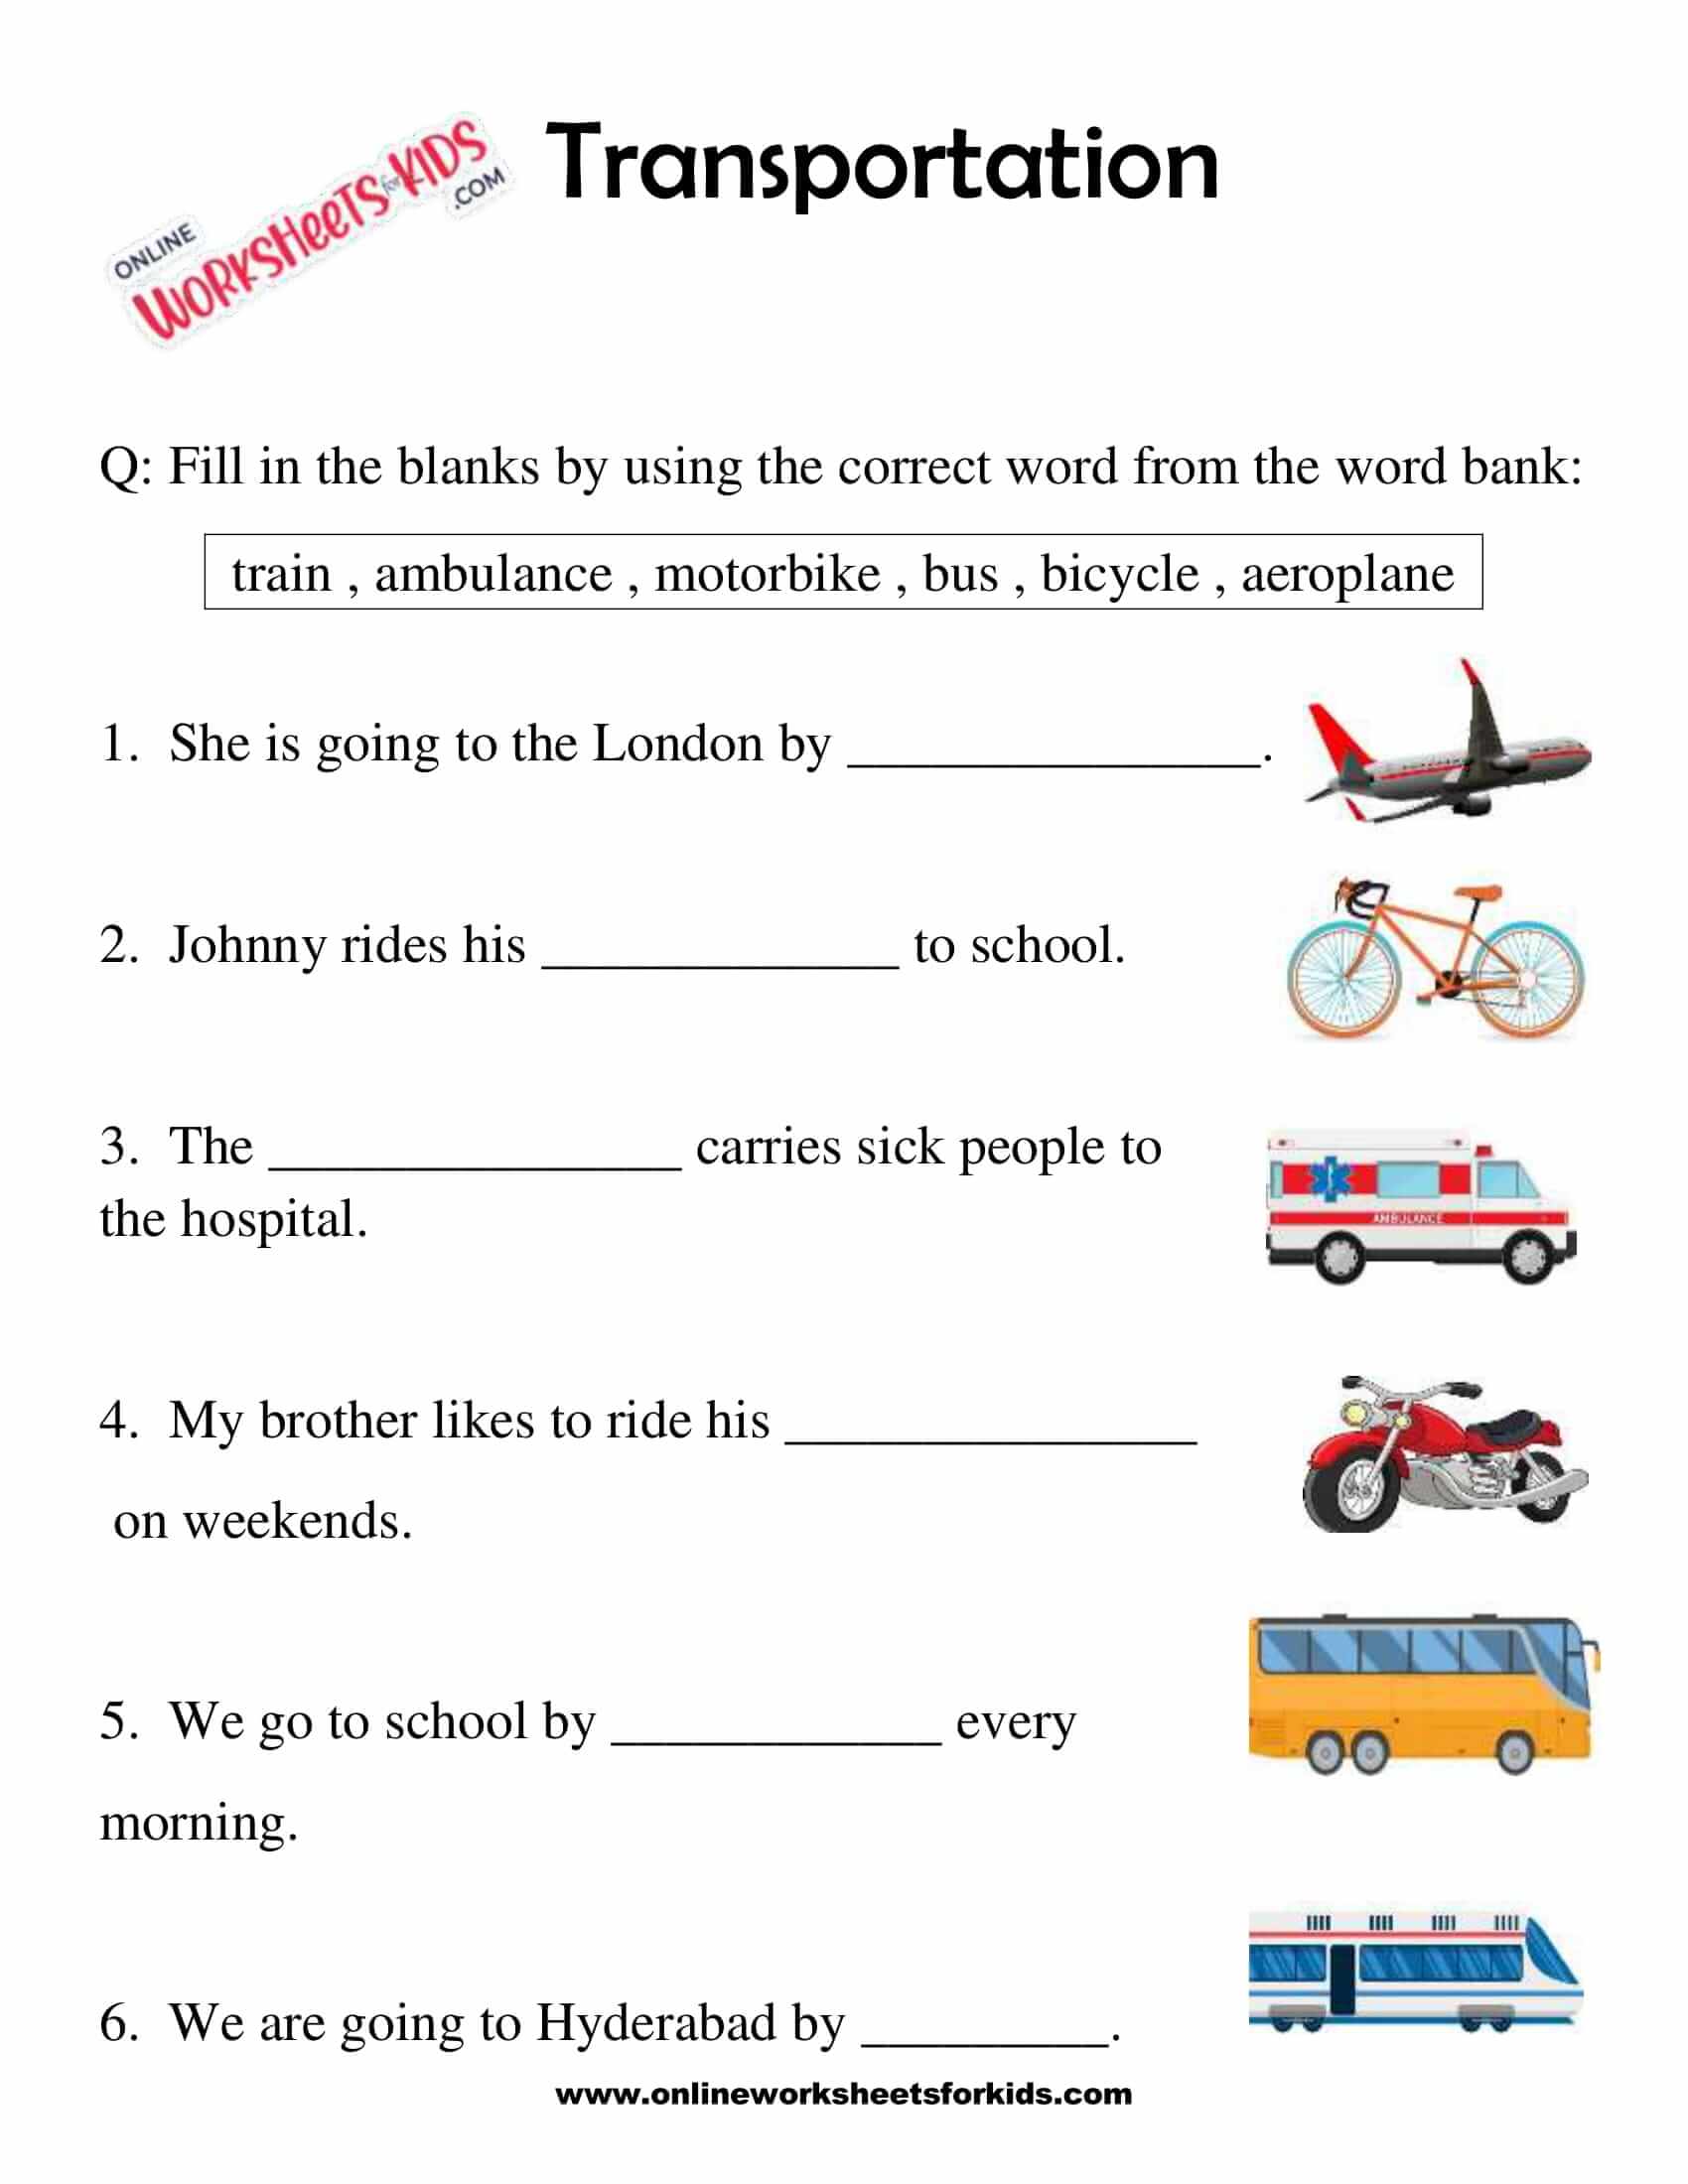 transportation-worksheets-for-grade-1-2